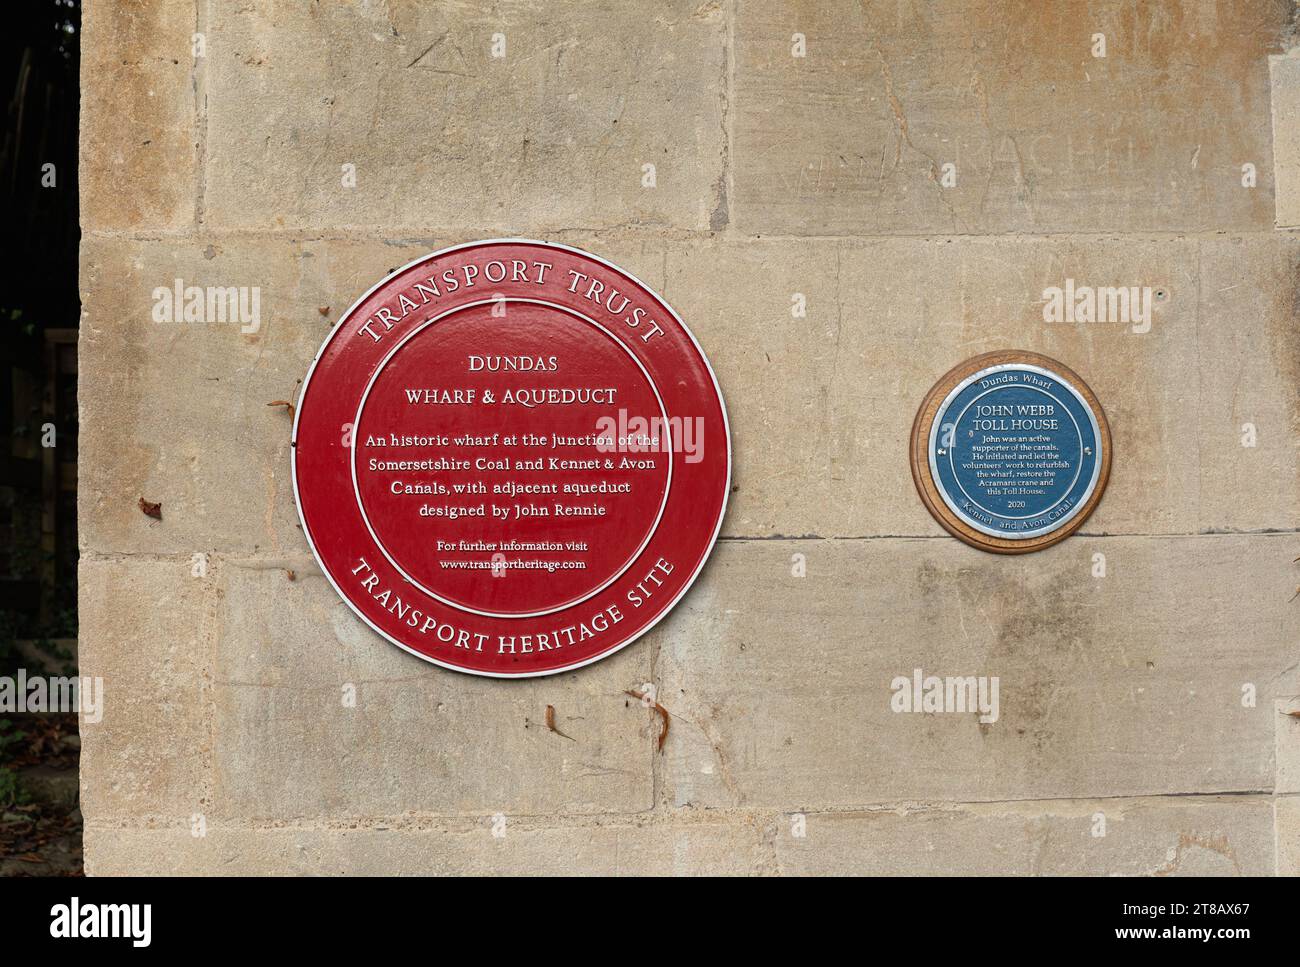 Une plaque de roue rouge de la National transport Trust et plaque bleue de péage, Dundas Wharf, aqueduc de Dundas, Monkton Combe Somerset, Angleterre, ROYAUME-UNI Banque D'Images